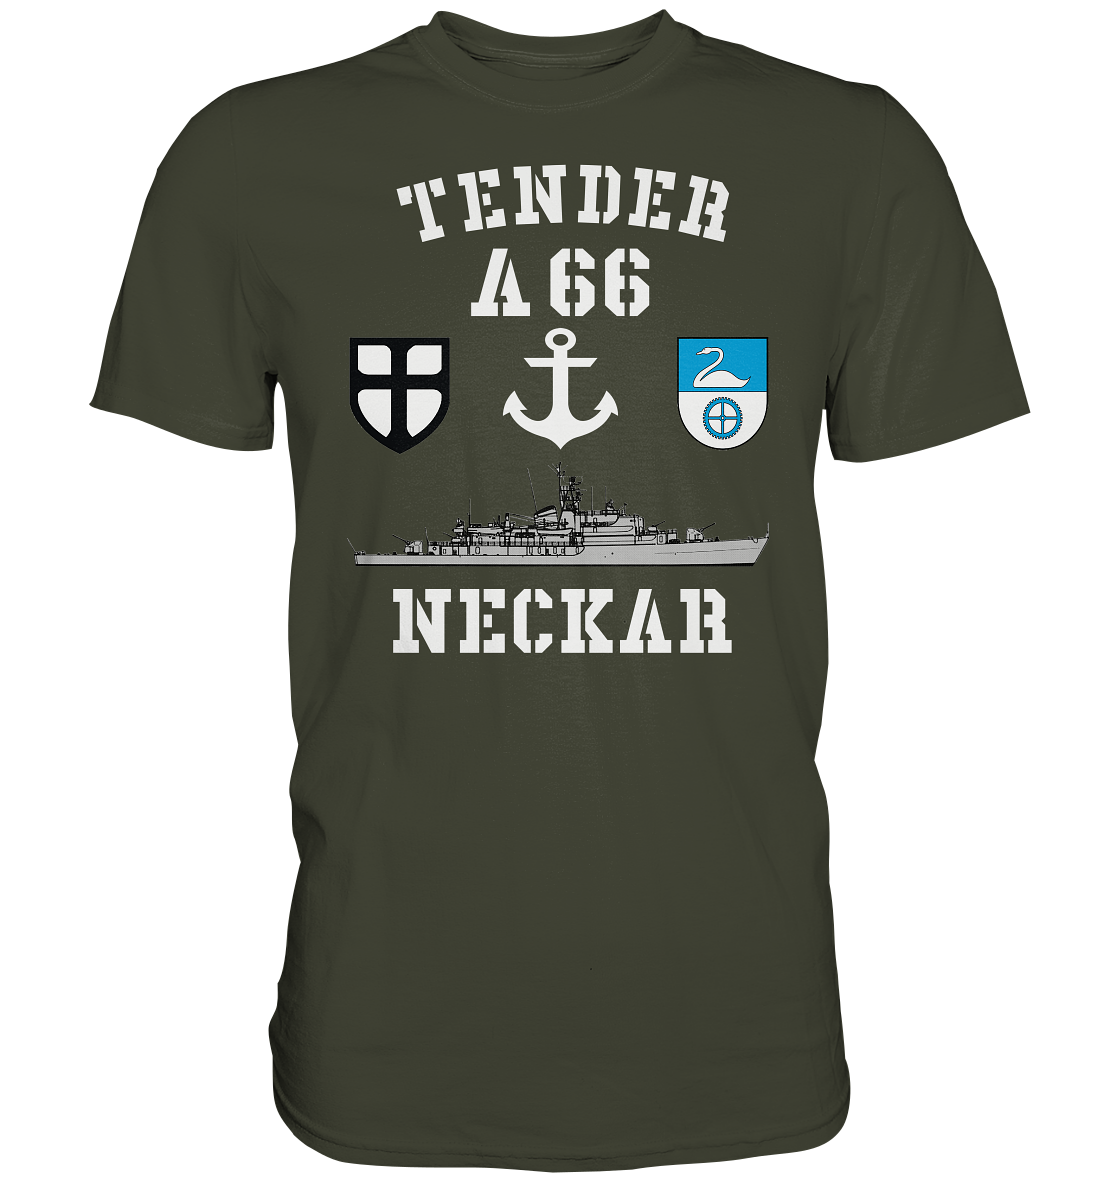 Tender A66 NECKAR 7.SG ANKER - Premium Shirt